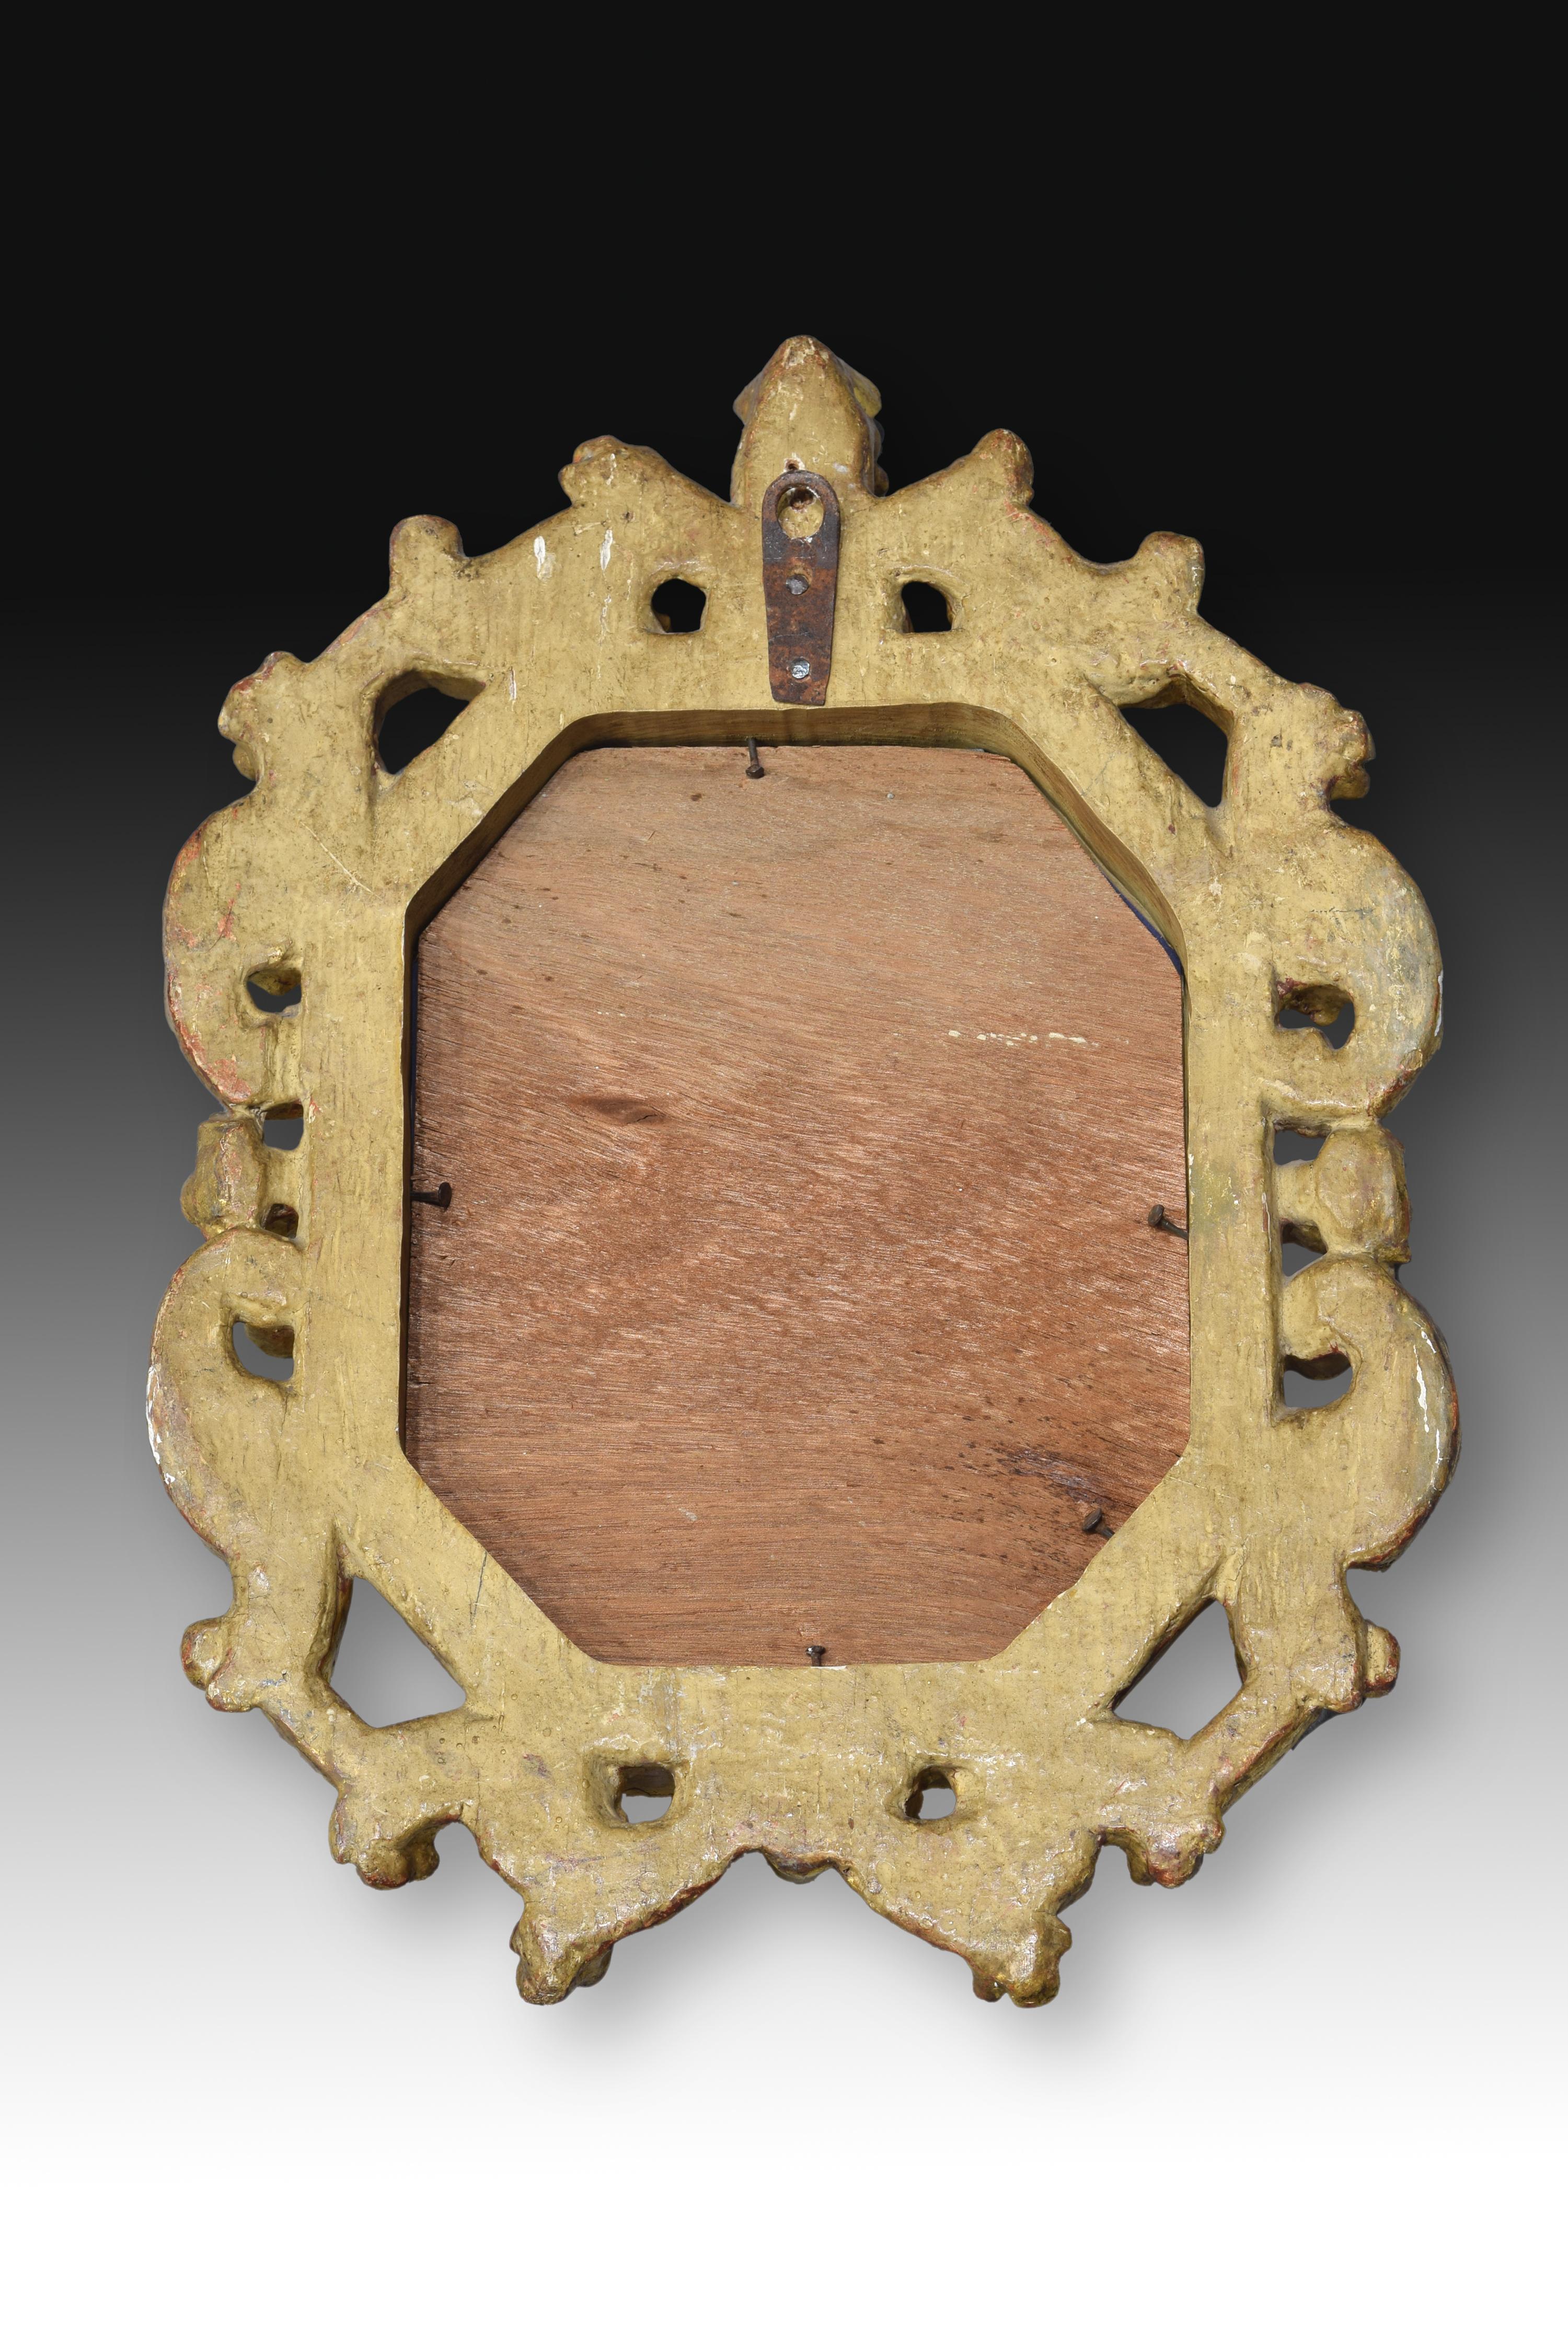 Rahmen. Goldenes Holz, 18. Jahrhundert.
 Rahmen aus geschnitztem und vergoldetem Holz mit einer Reihe von Leisten im Inneren, die ein Achteck bilden, und einer nach außen durchbrochenen Komposition mit pflanzlichen Elementen, Schnörkeln und